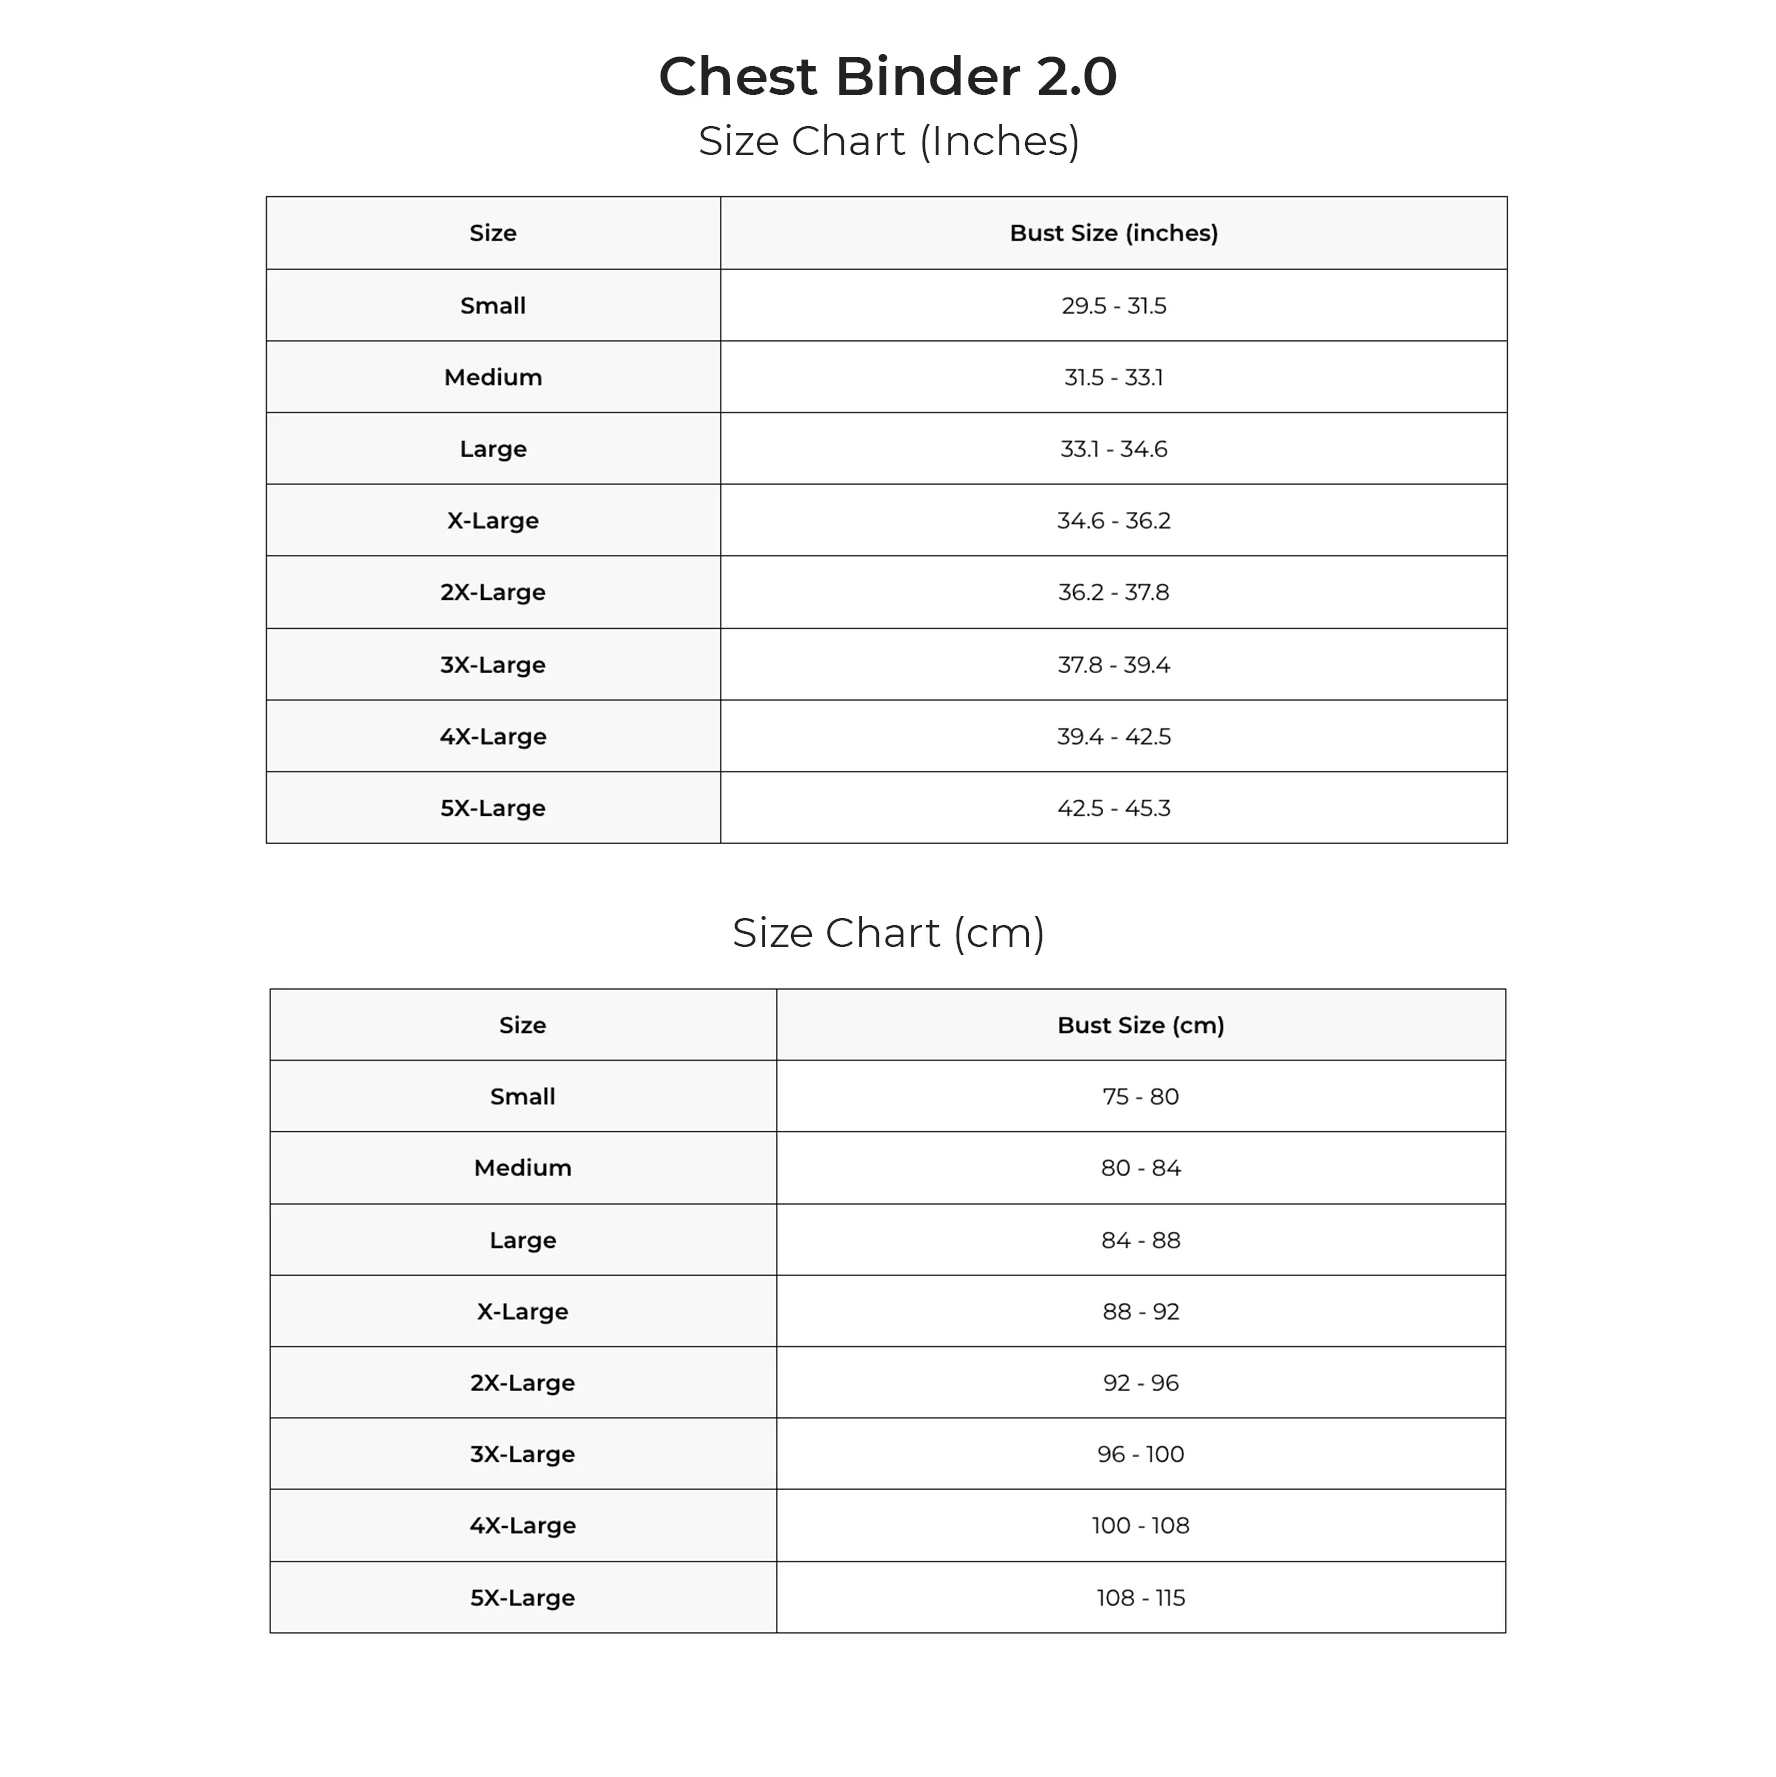 Chest Binder 2.0